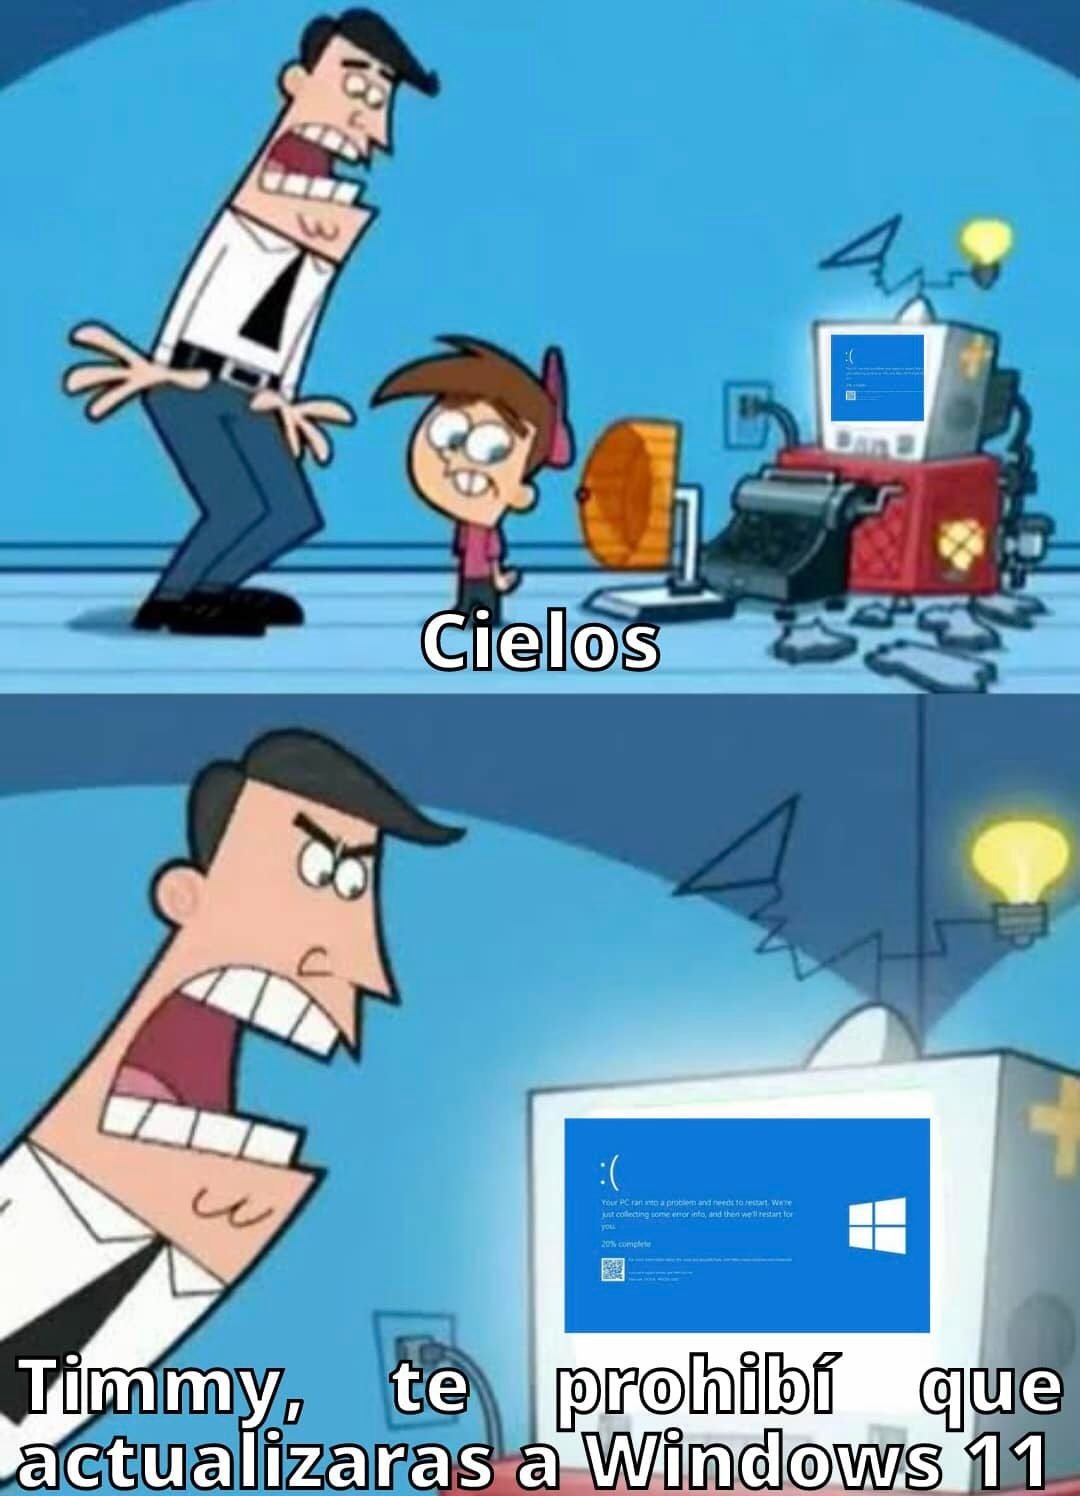 Y recuerden: Nunca actualicen a Windows 11 en tu ordenador. - meme